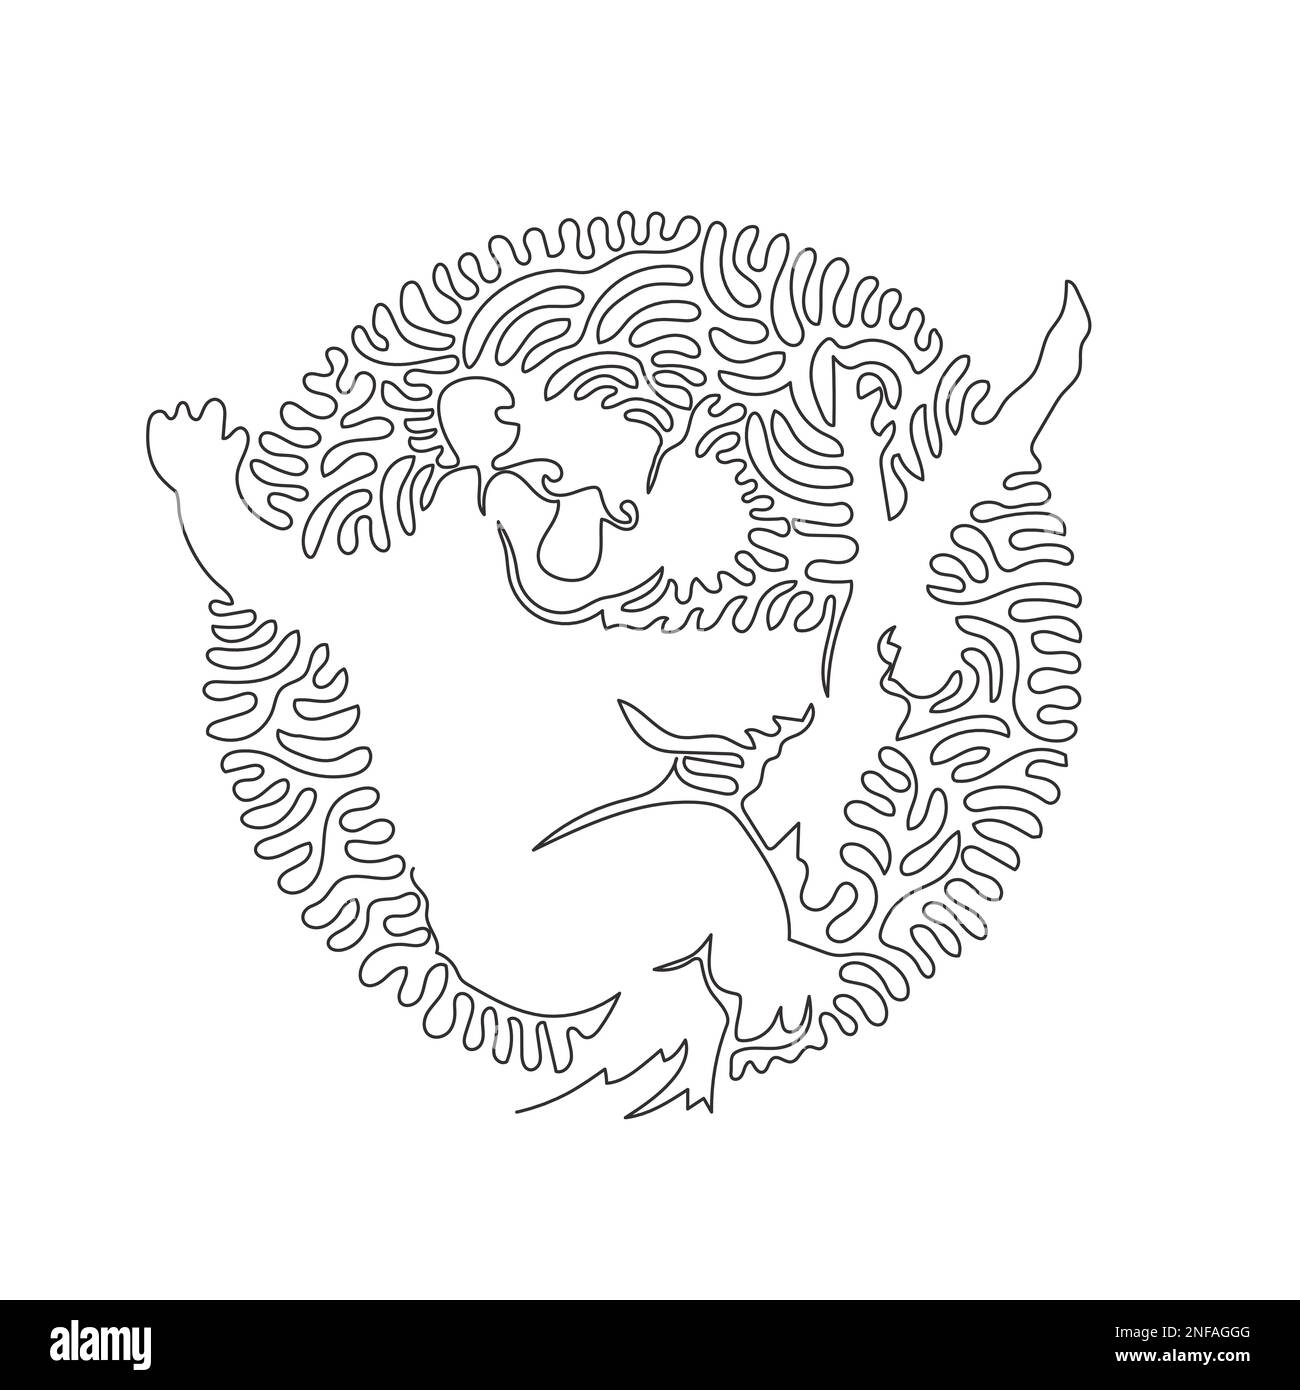 Durchgehende Kurve eine Strichzeichnung süßer abstrakter Koalas. Einzeiliger editierbarer Strichvektor die Darstellung des Koalas hat große pelzige Ohren Stock Vektor